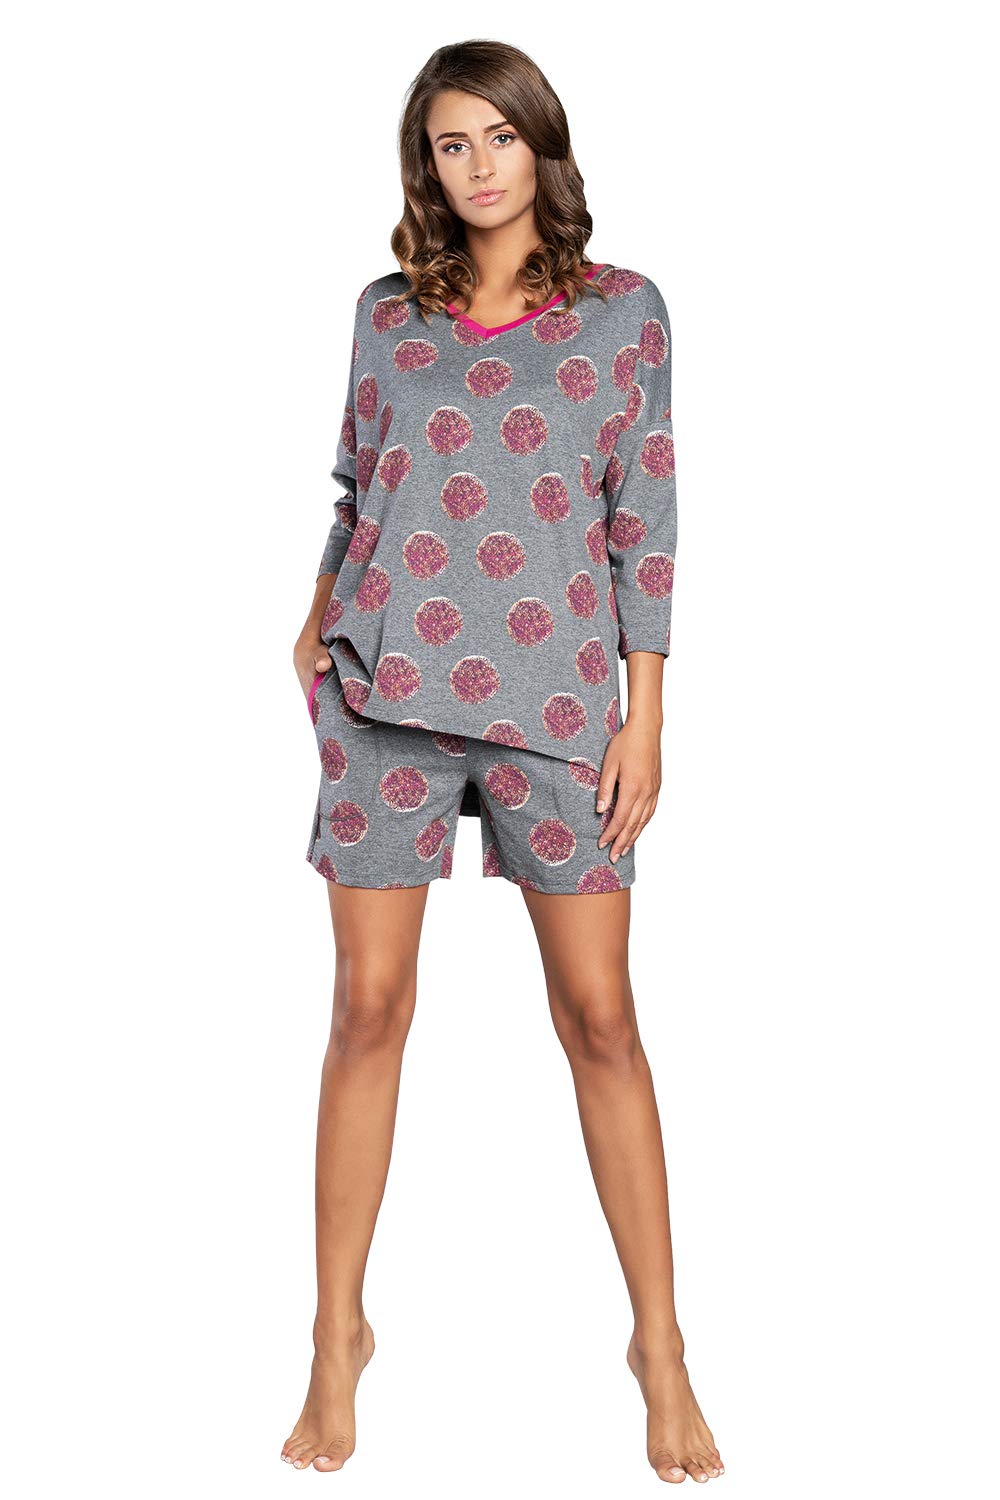 Damen Schlafanzug lang Pyjama Set | Nachtwäsche Hausanzug Langearm Rund Ausschnitt Zweiteiliger Sleepwear M007 (M, Grau Rosa)